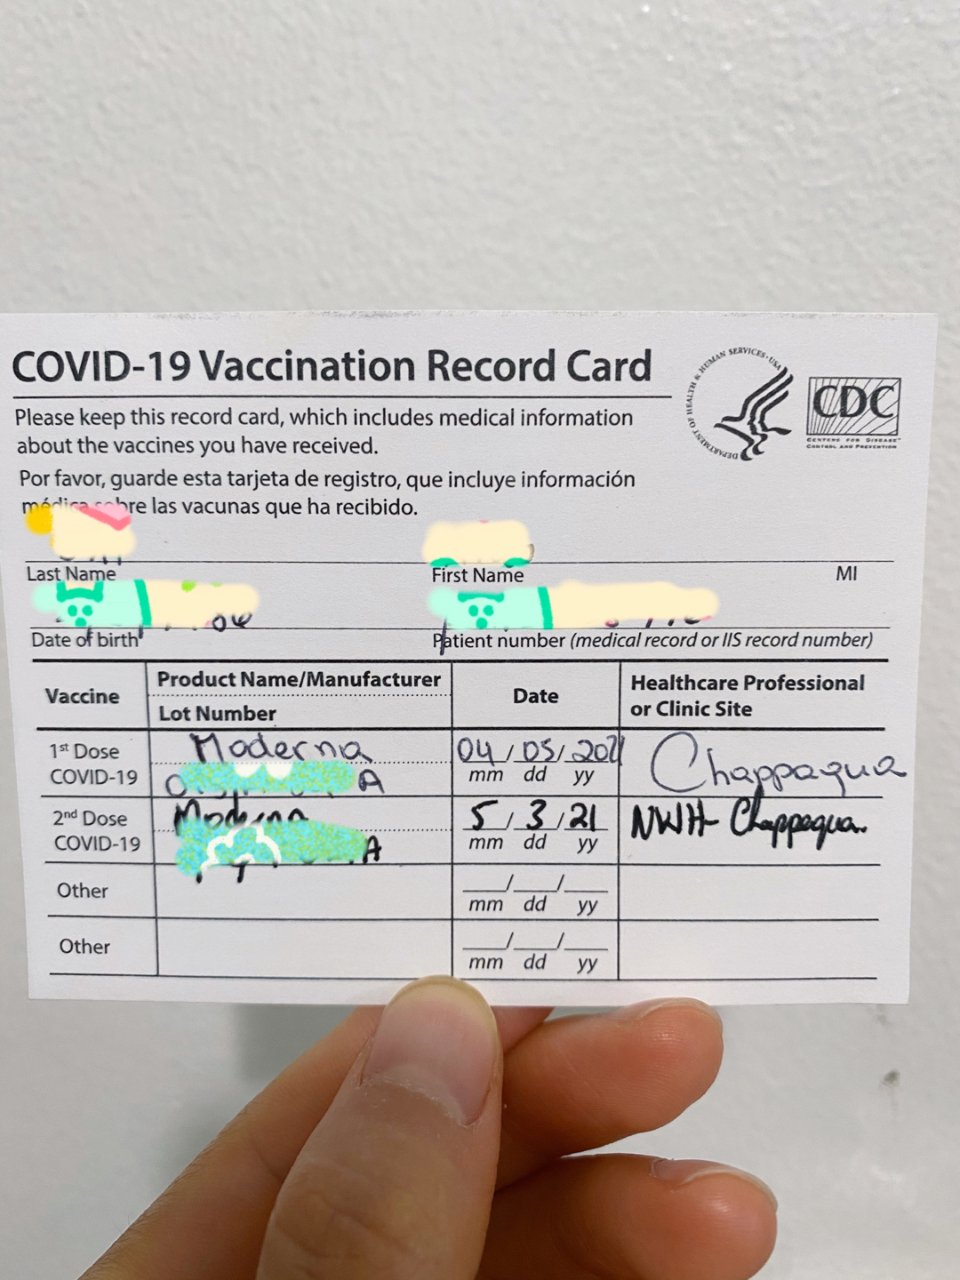 万莫轻敌 - 第二针疫苗接种记录📝...